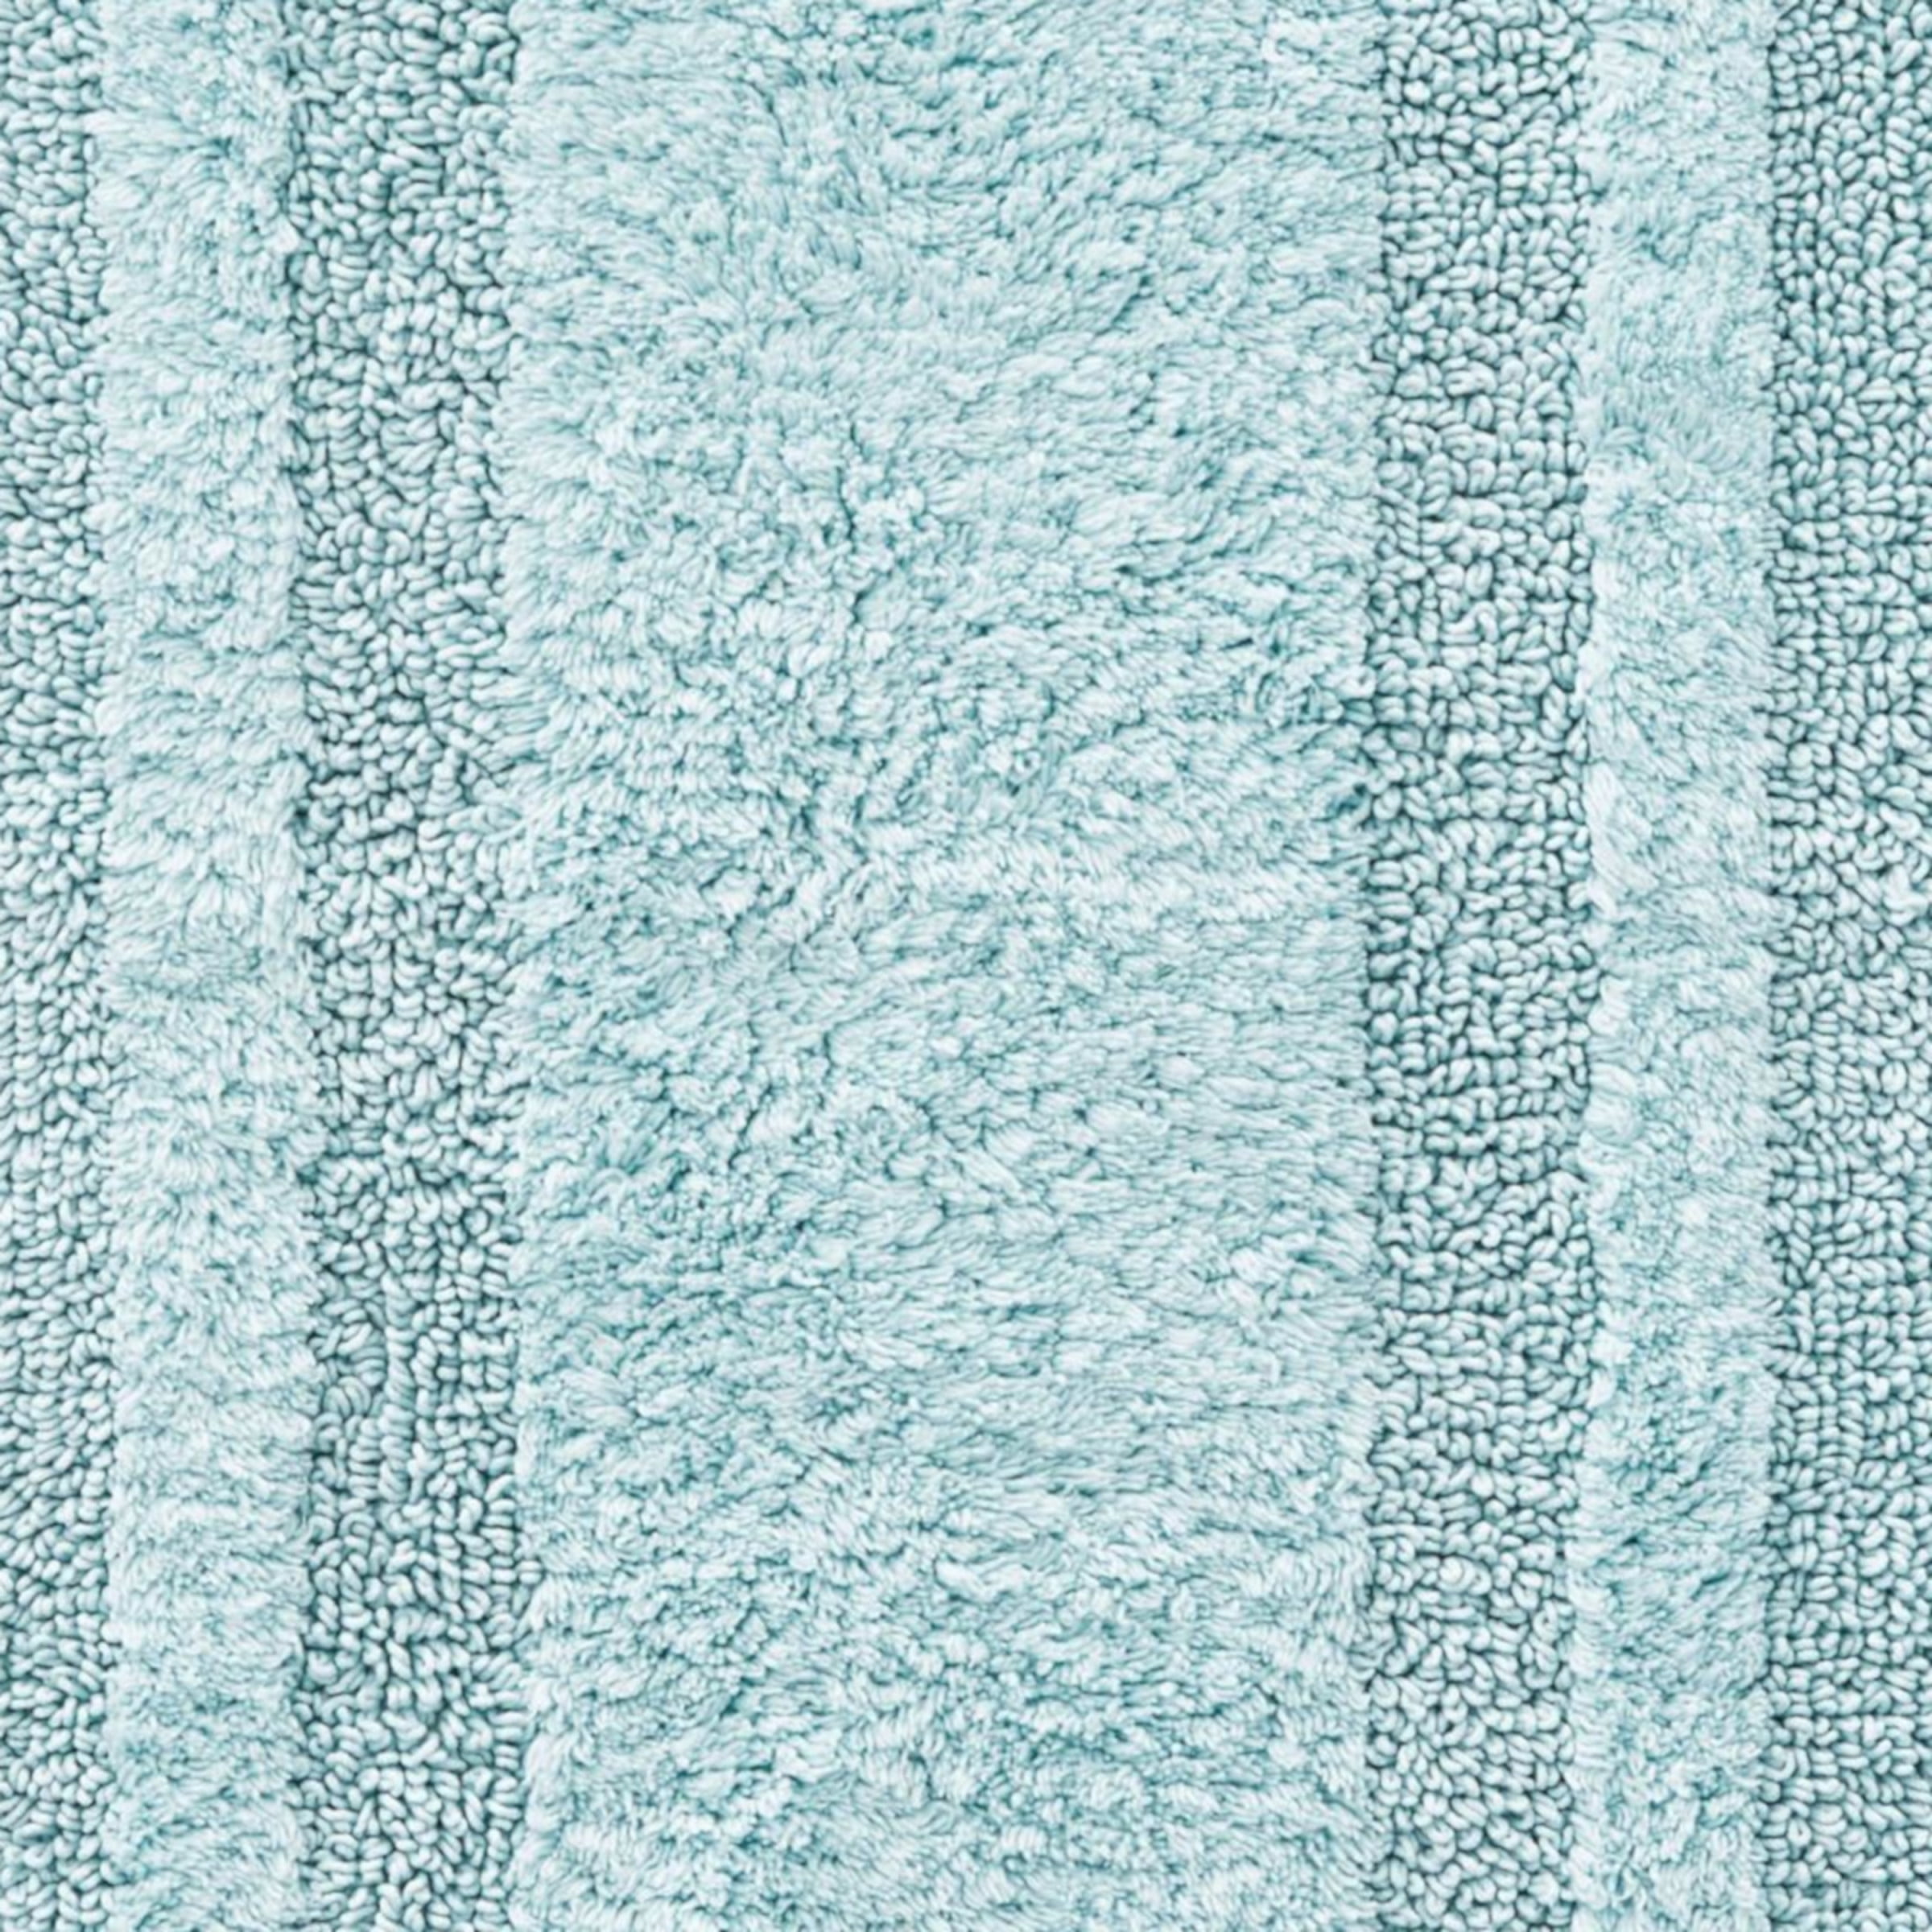 EDDIE BAUER Logan Turquoise Aqua 22 in. x 60 in. Solid Cotton 1-Piece Runner Rug